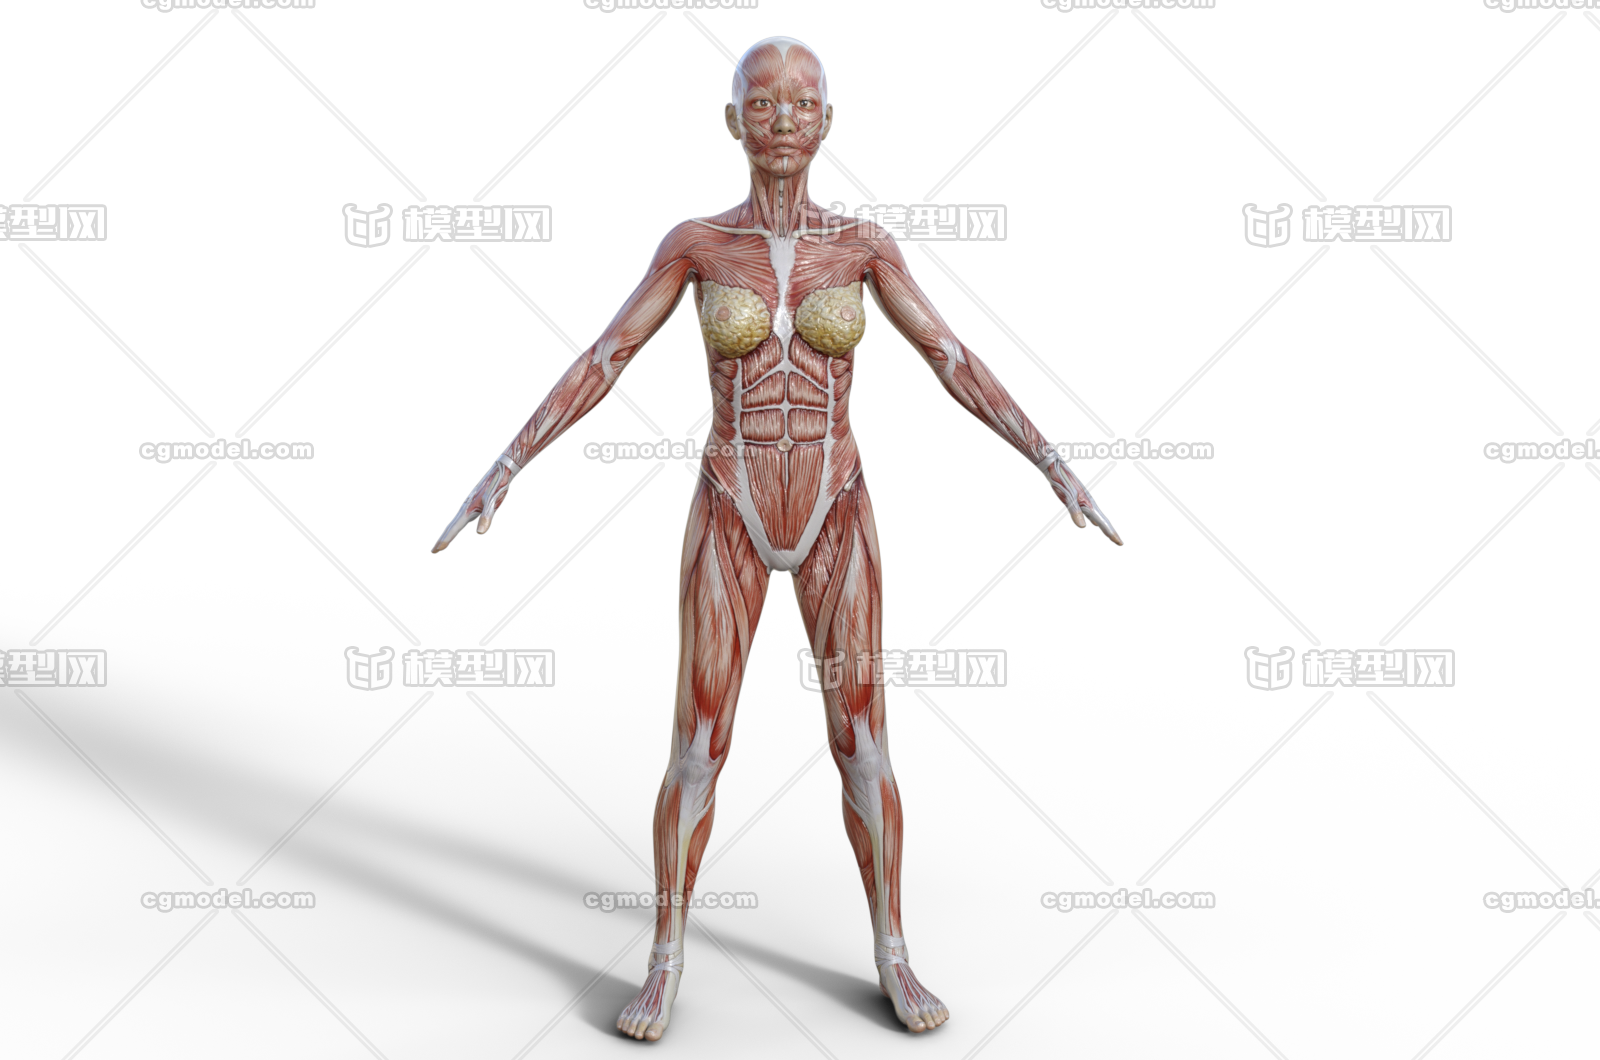 肌肉人体人体结构筋腱医学模型解剖人体男人体女人体 未成年人孩童 Cg模型网 Cgmodel 三维设计师交流互动平台 专注多品类3d模型下载 原创作品分享 软件学习